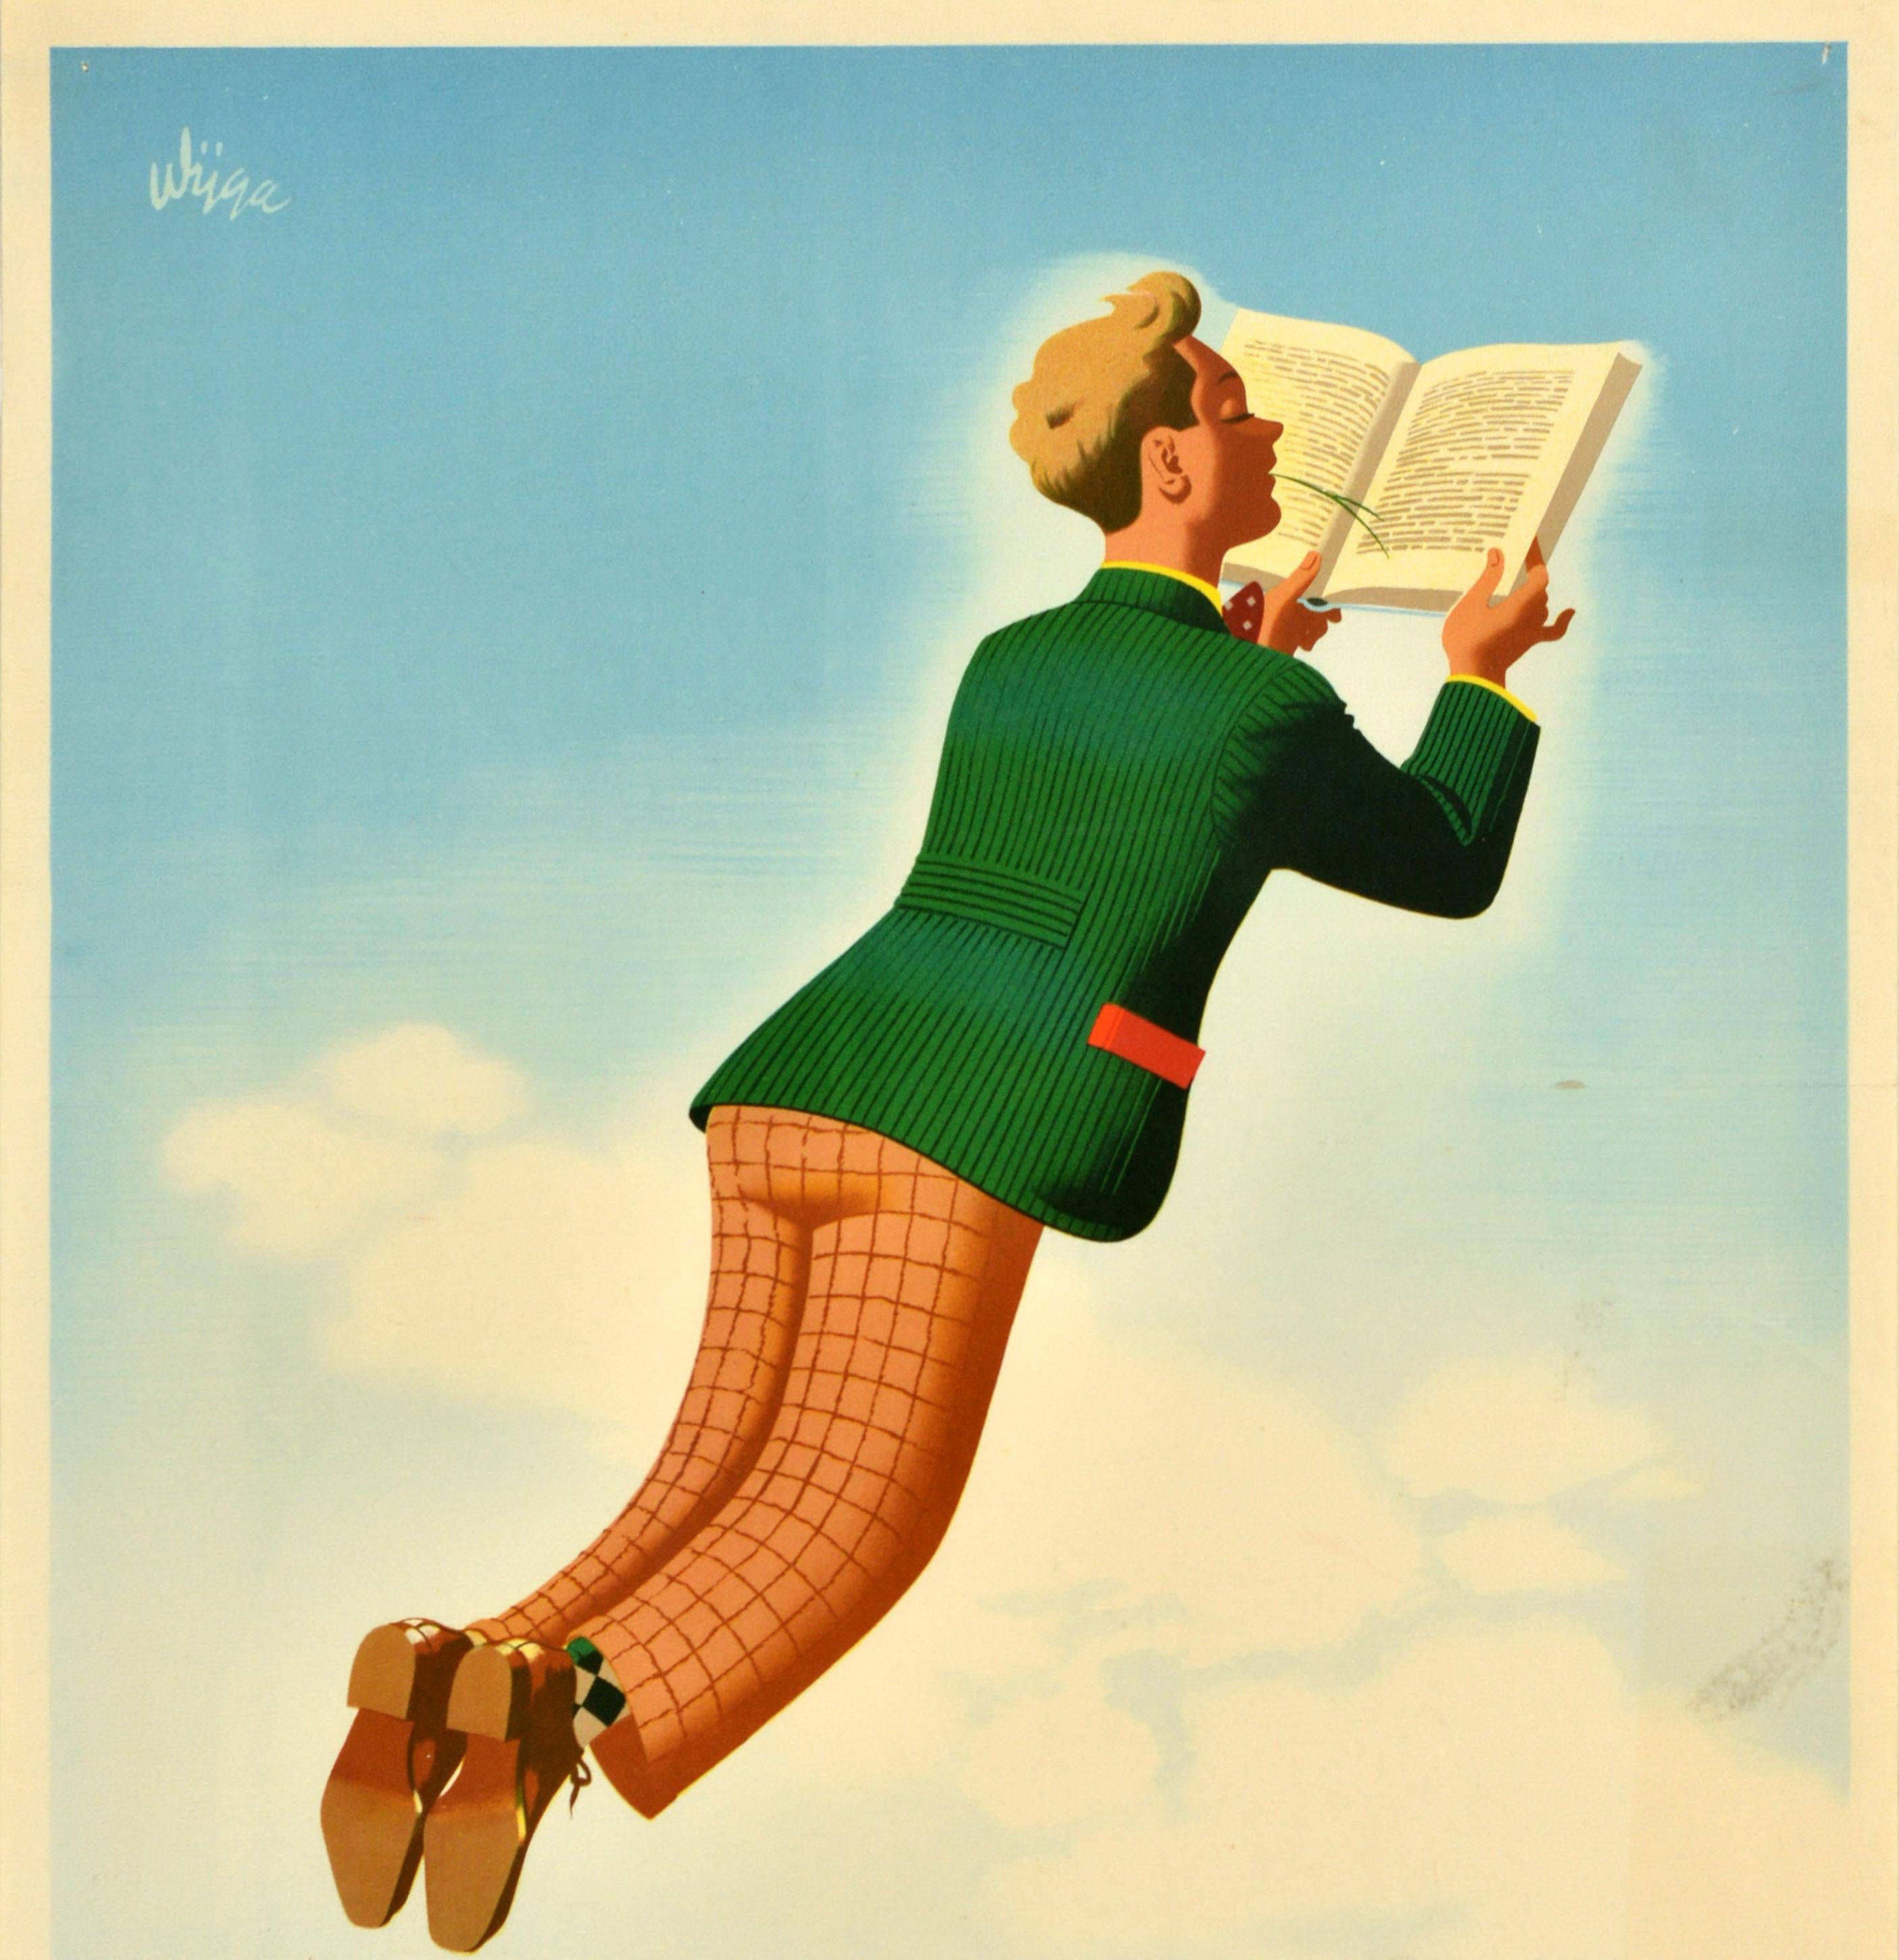 Original Vintage Advertising Poster Vacation Book Vacantie Boek Sky Jan Wijga For Sale 2